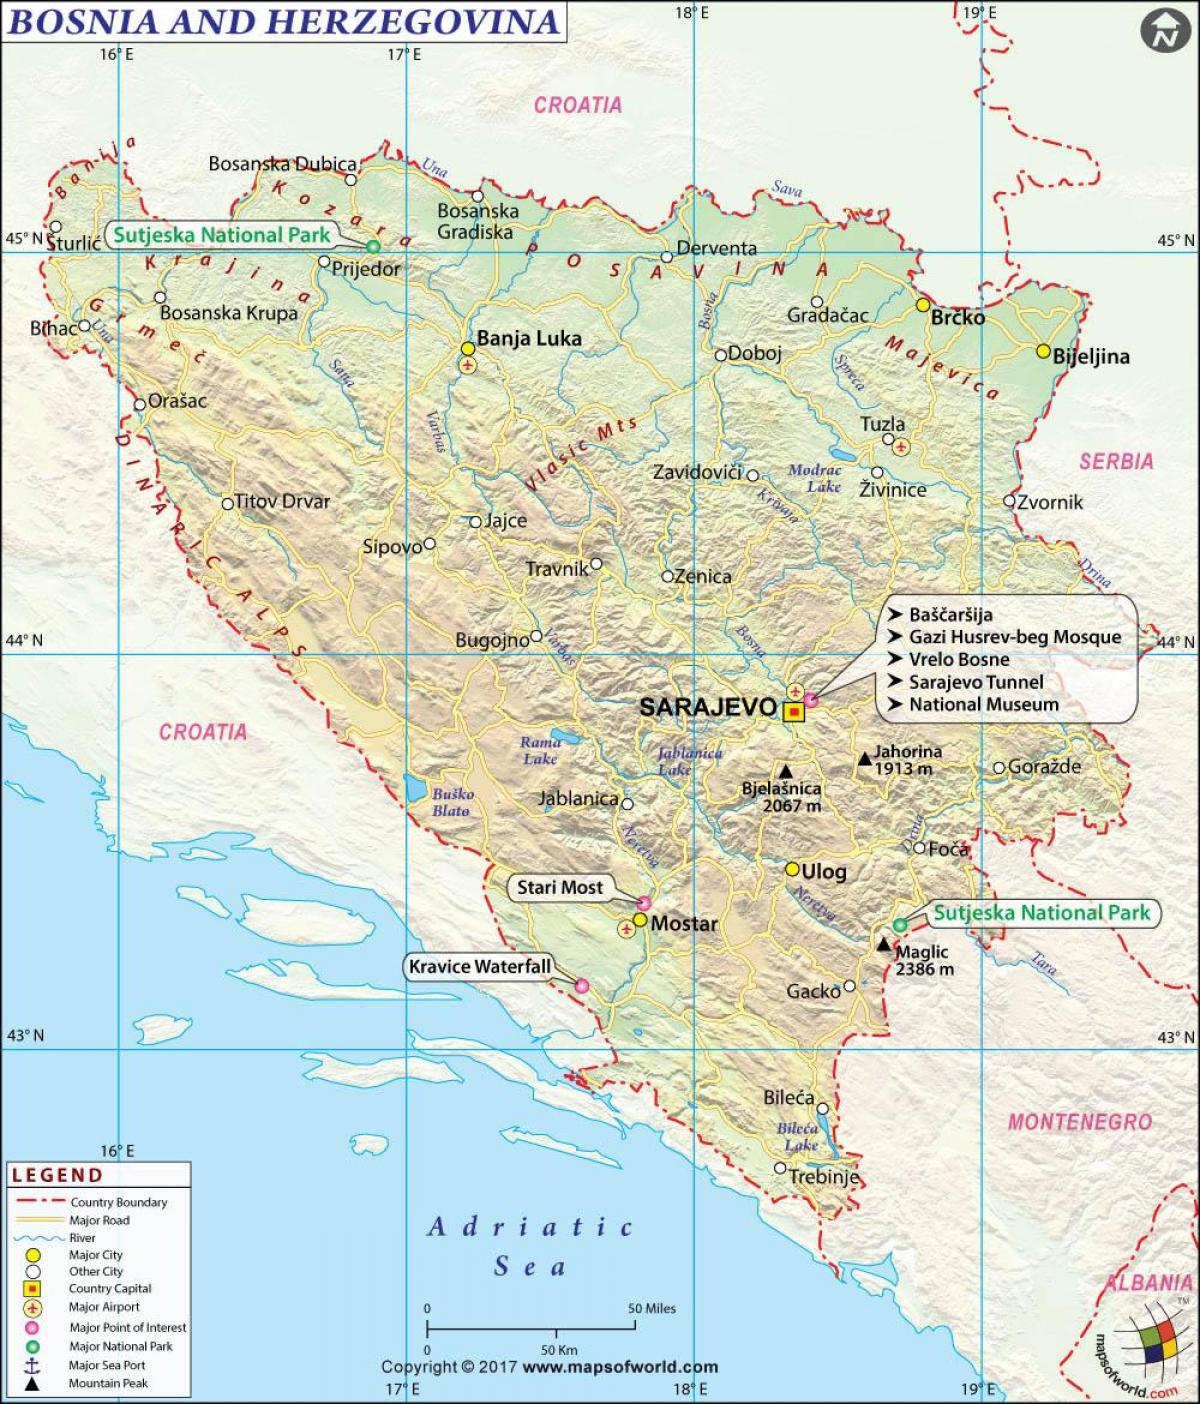 Բոսնիա եւ Հերցեգովինա քարտեզի վրա